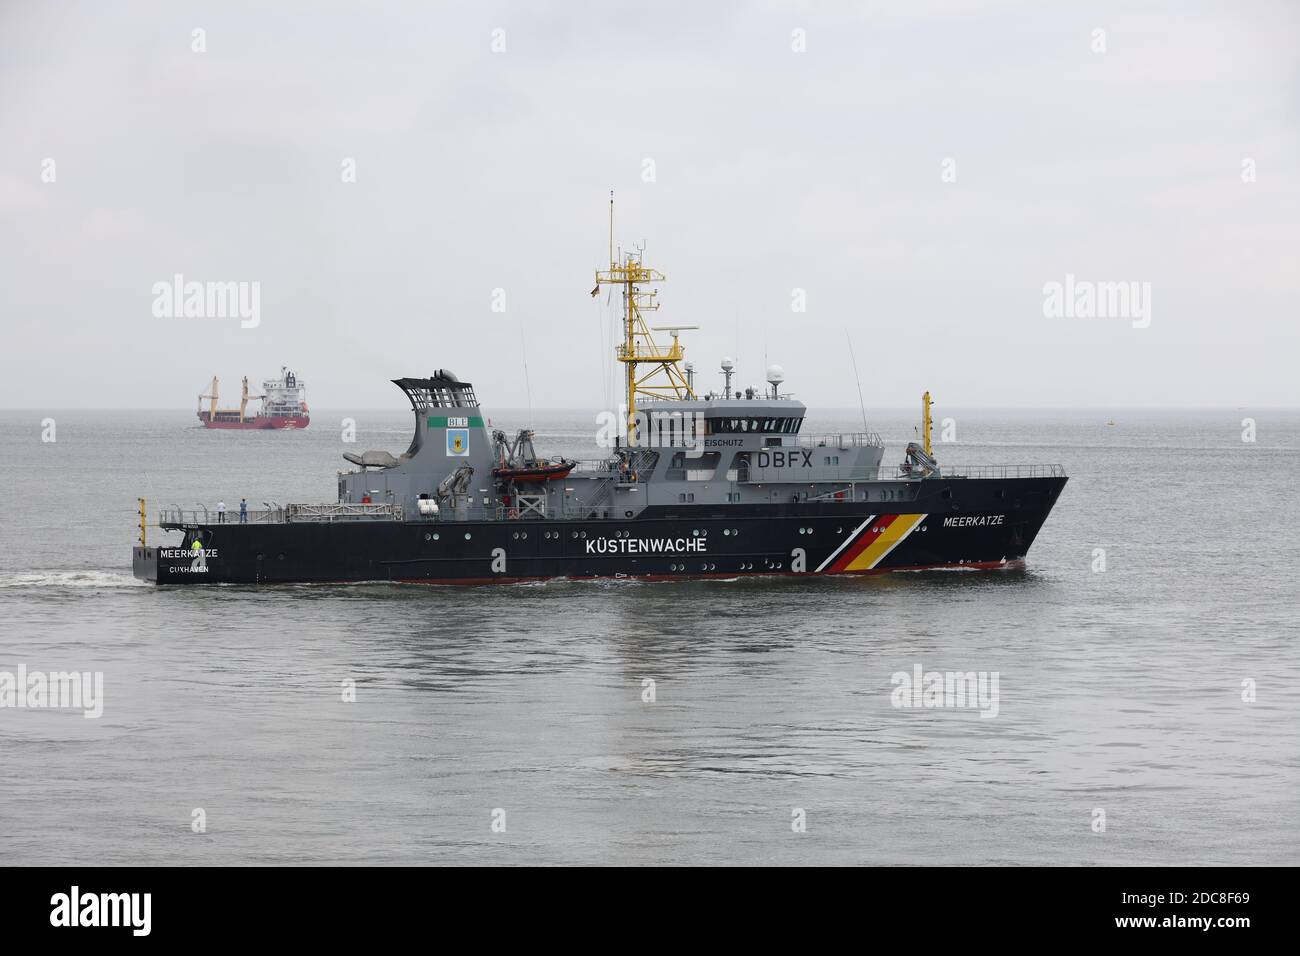 Le navire de protection du poisson de la garde côtière Meerkatze quittera le port de Cuxhaven le 20 août 2020. Banque D'Images